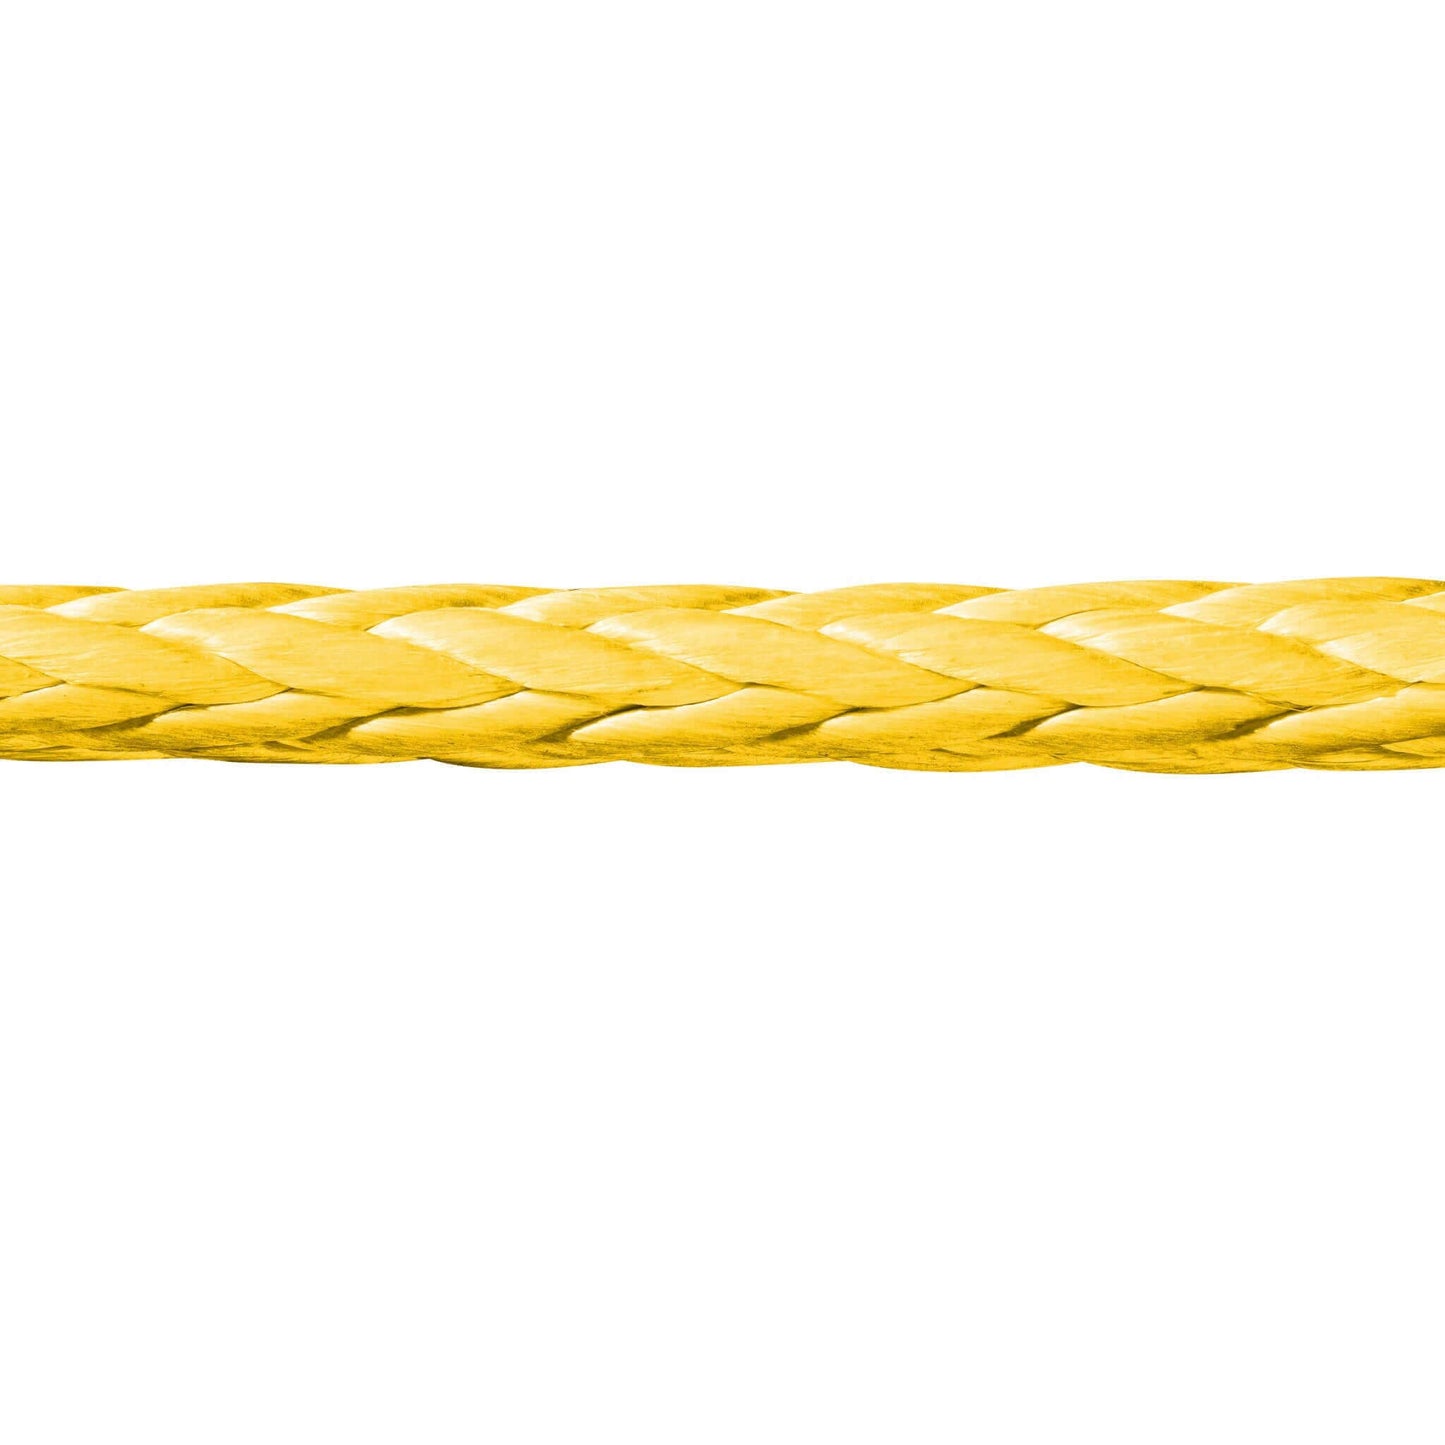 Novoleen® Pu12 Zugseilverlängerungen von Seilflechter - Vielseitige Lösung zur Seilverlängerung. Erhältlich in verschiedenen Längen und Durchmessern. Mit Augspleiß an beiden Enden für einfache Verbindung mit Beschlagteilen oder Tauwerkschäkeln. Ideal für Windenseile, Greifzüge im Forst und mehr.